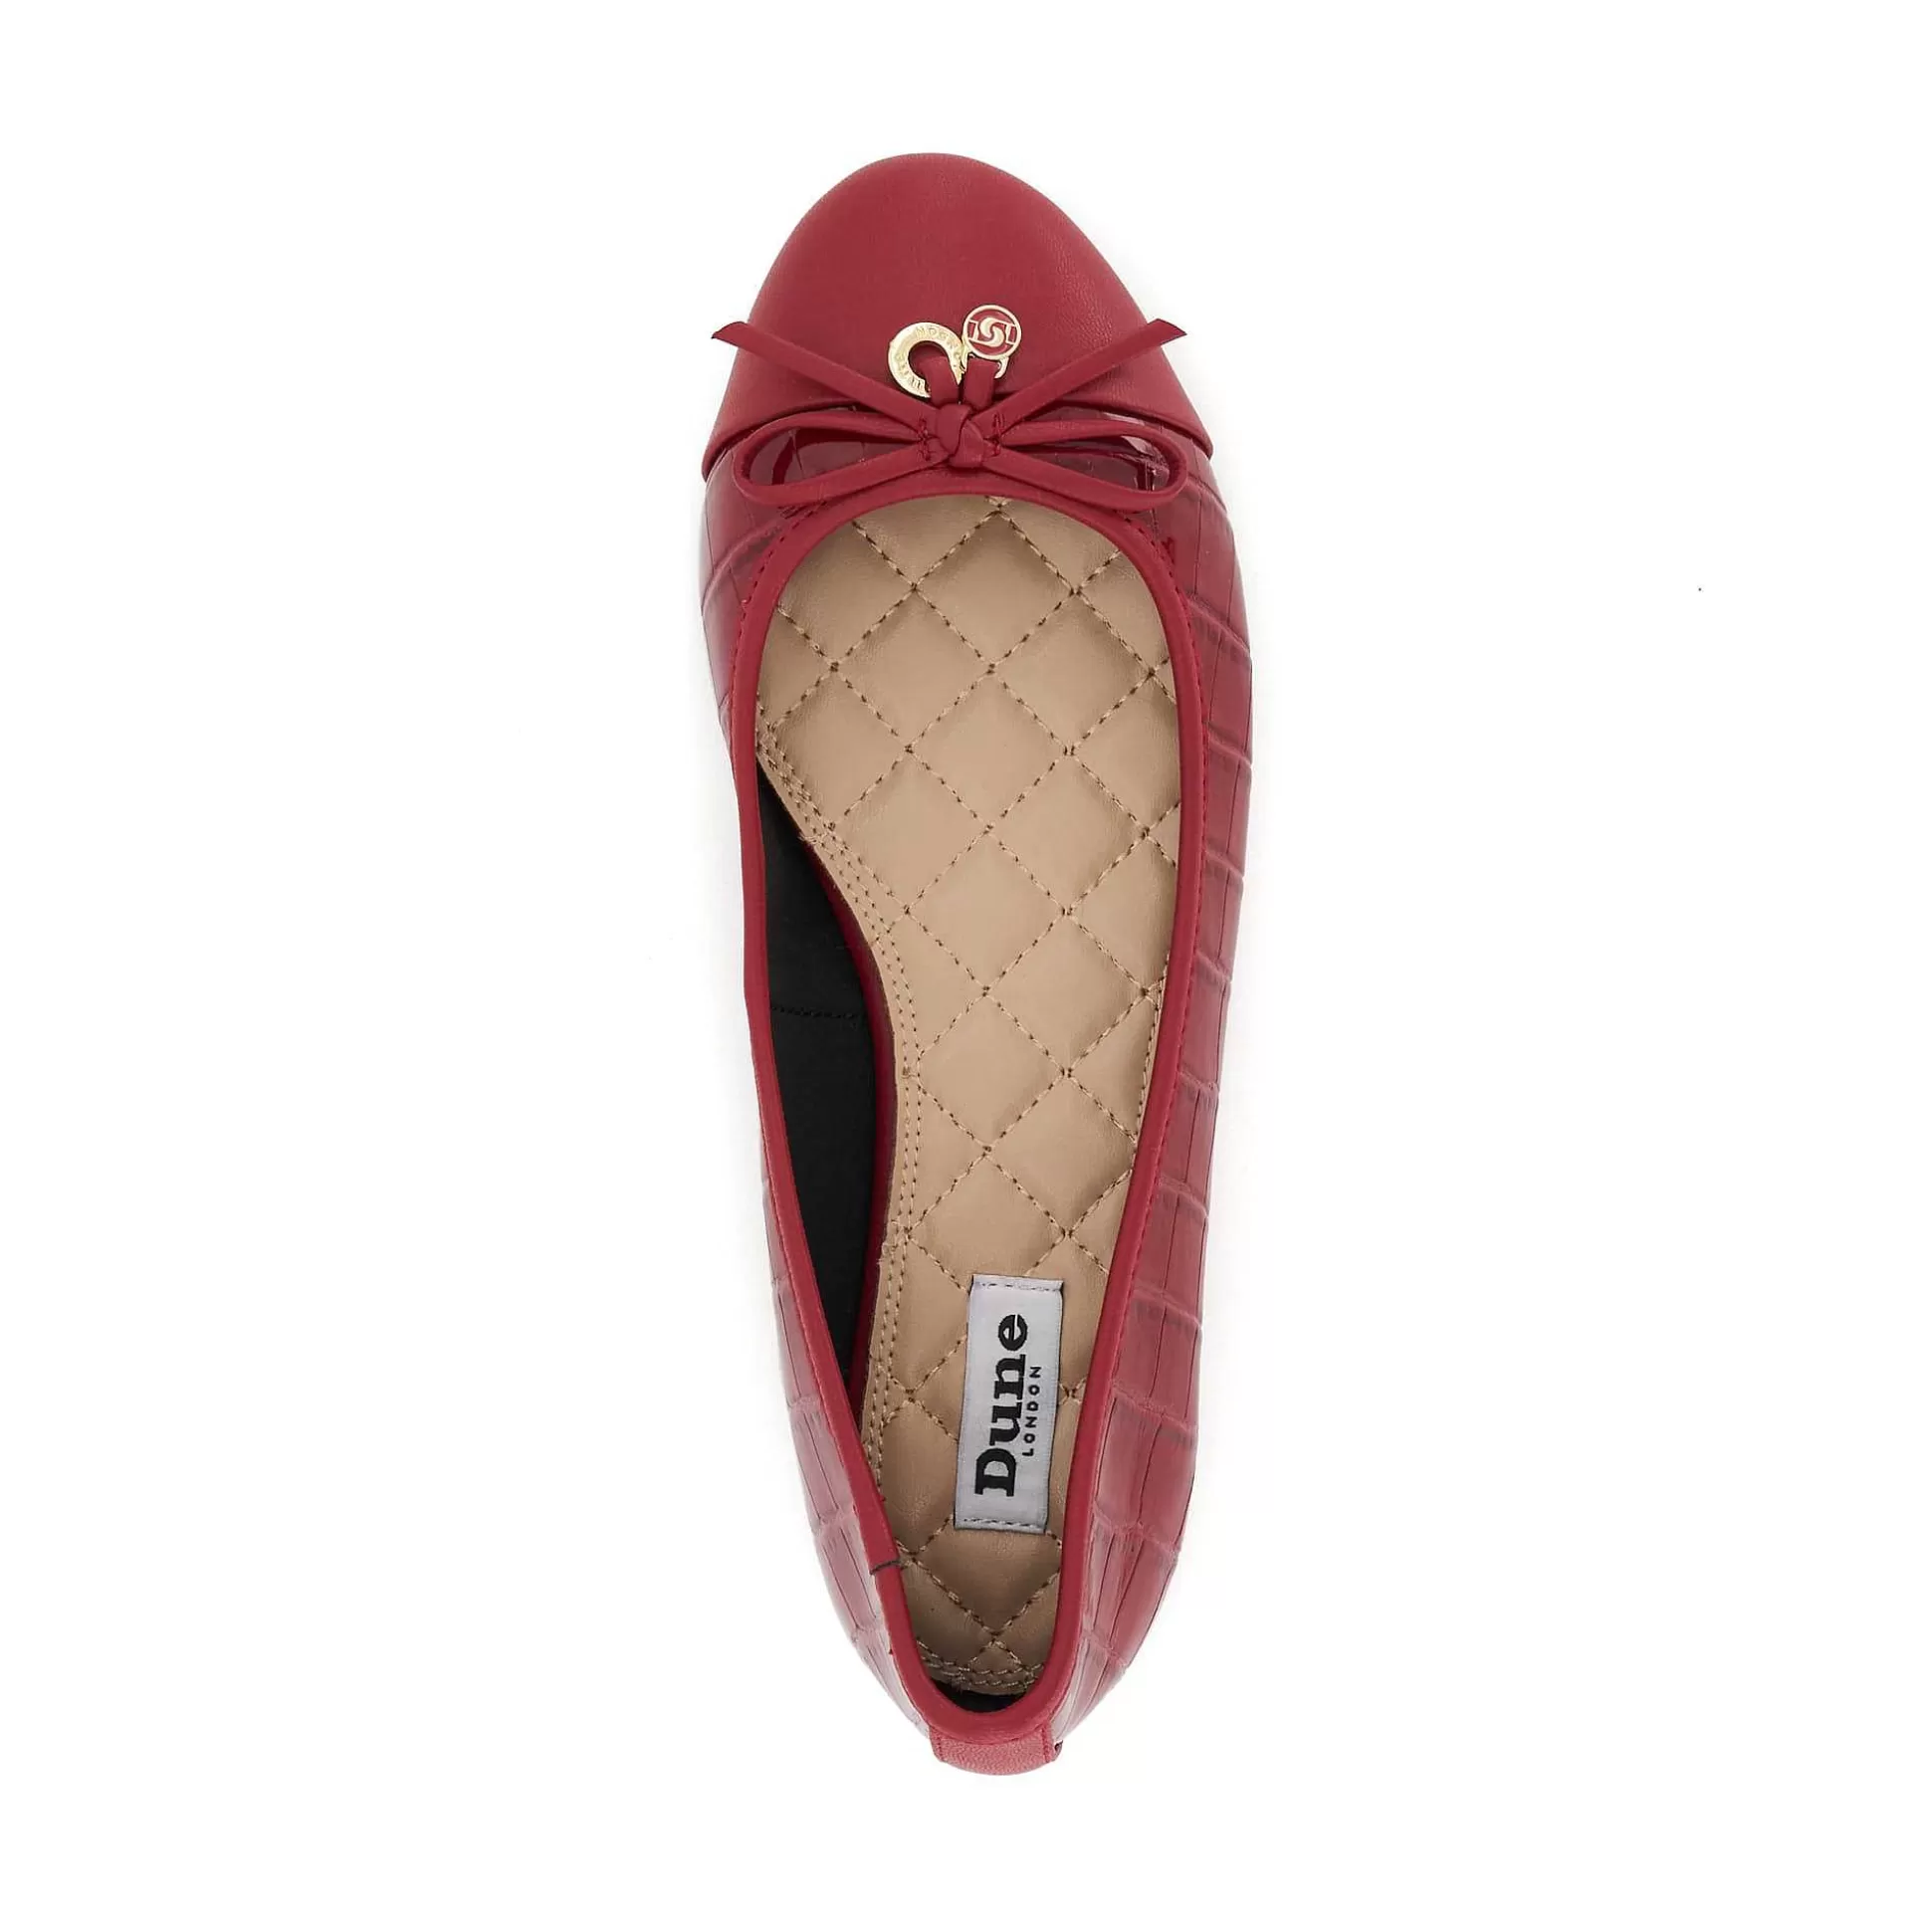 Dune London HALLO - RED-Women Flat Shoes | Ballet Pumps